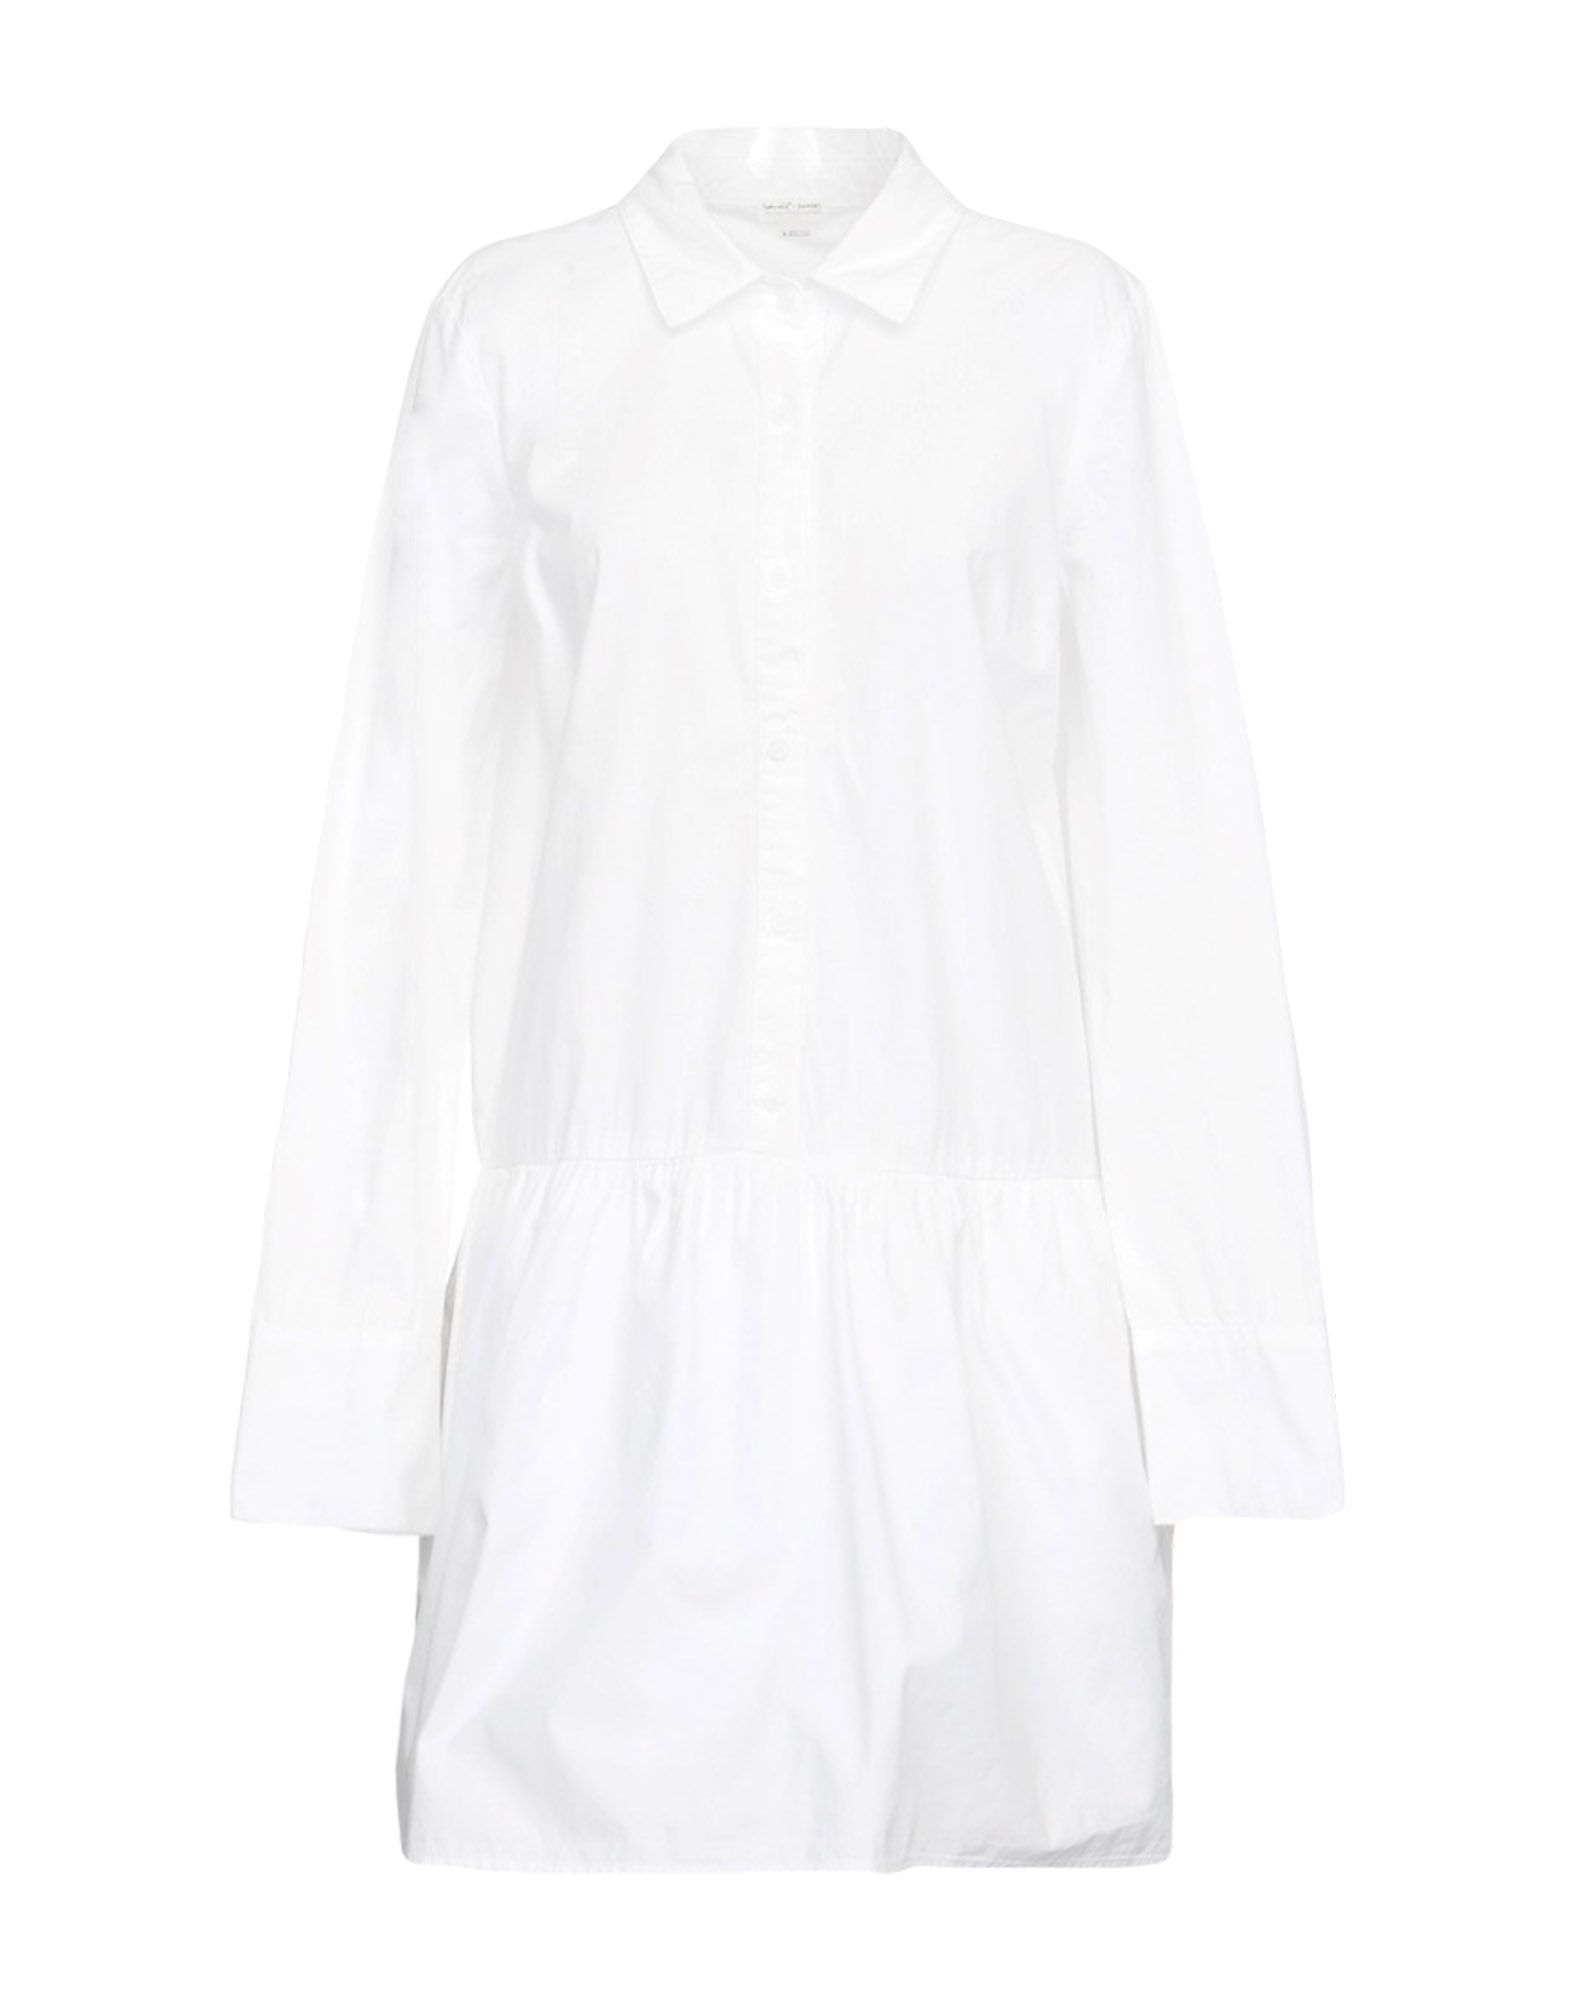 Длинные белые рубашки женские купить. Dorothee Schumacher рубашка. Maison Margiela хлопковая рубашка женские. Белое платье рубашка. Белые удлиненные рубашки женские.